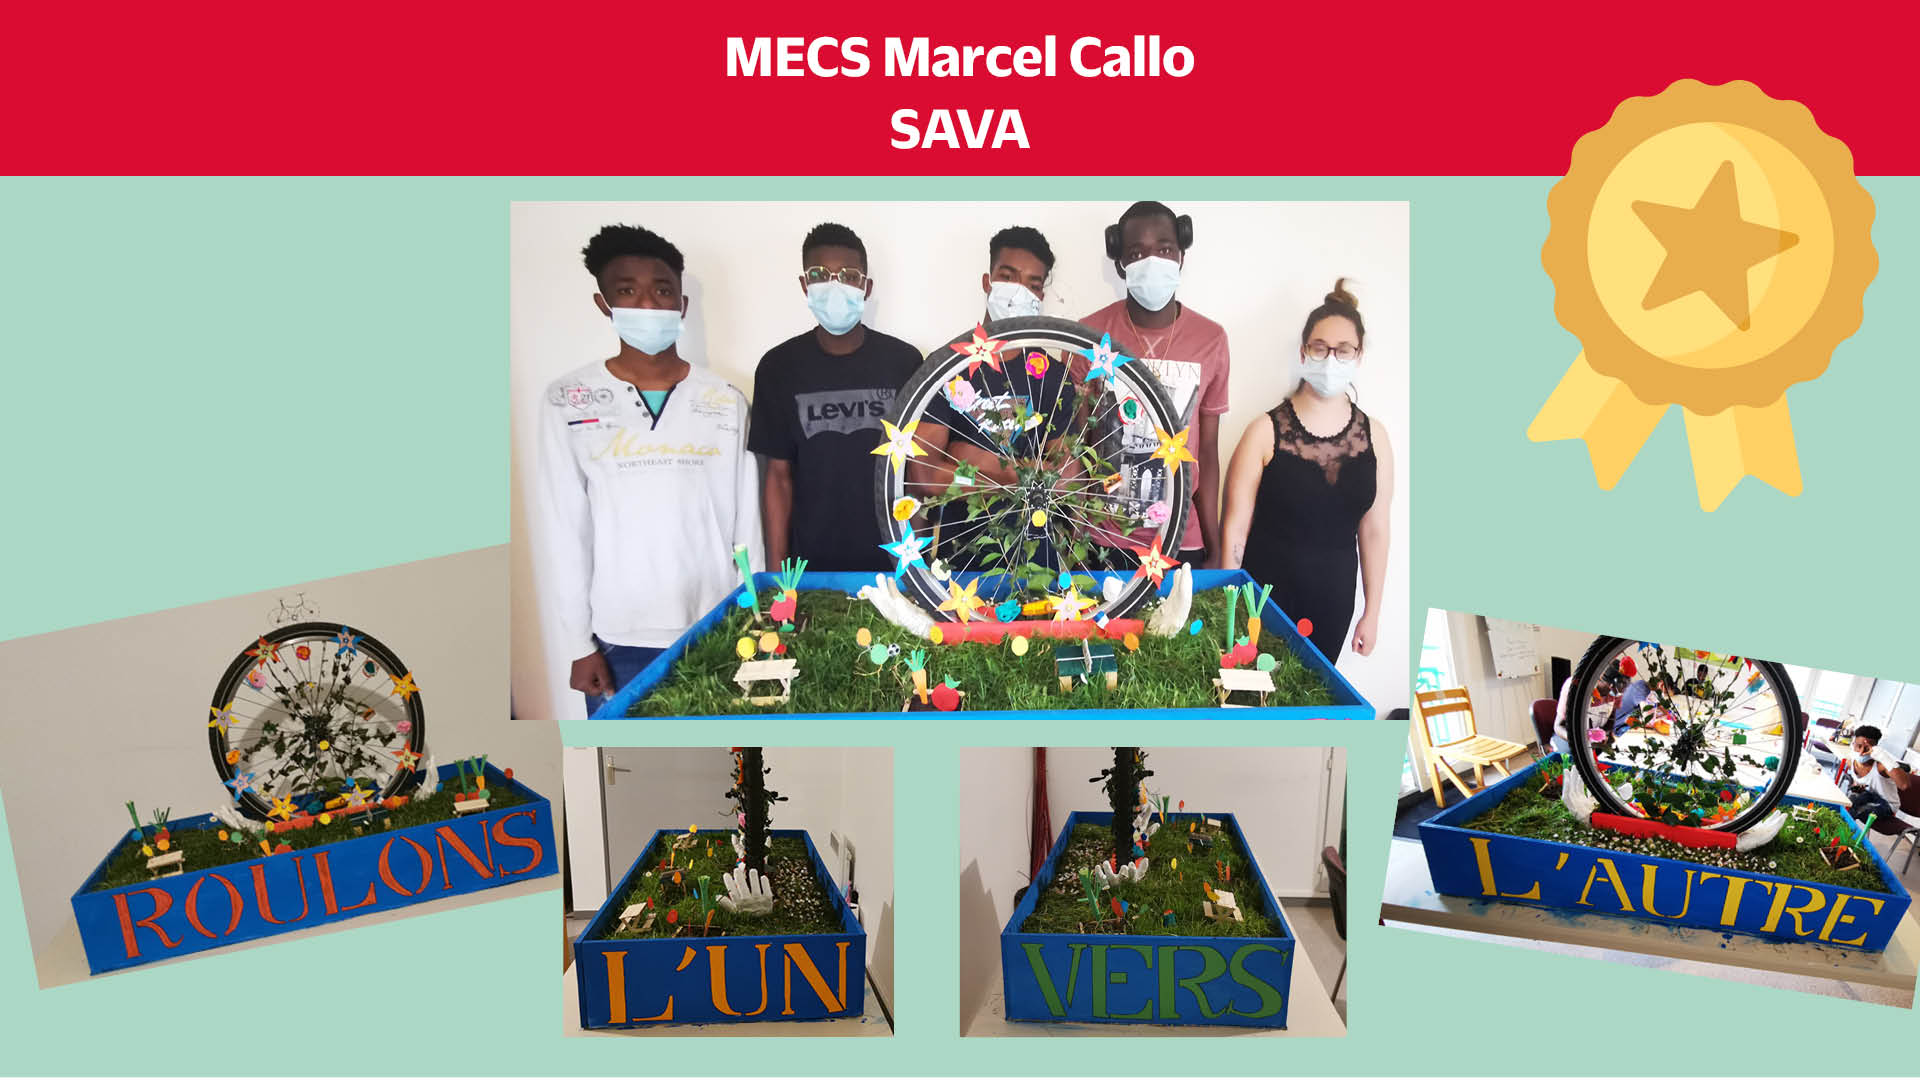 4. MECS Marcel Callo